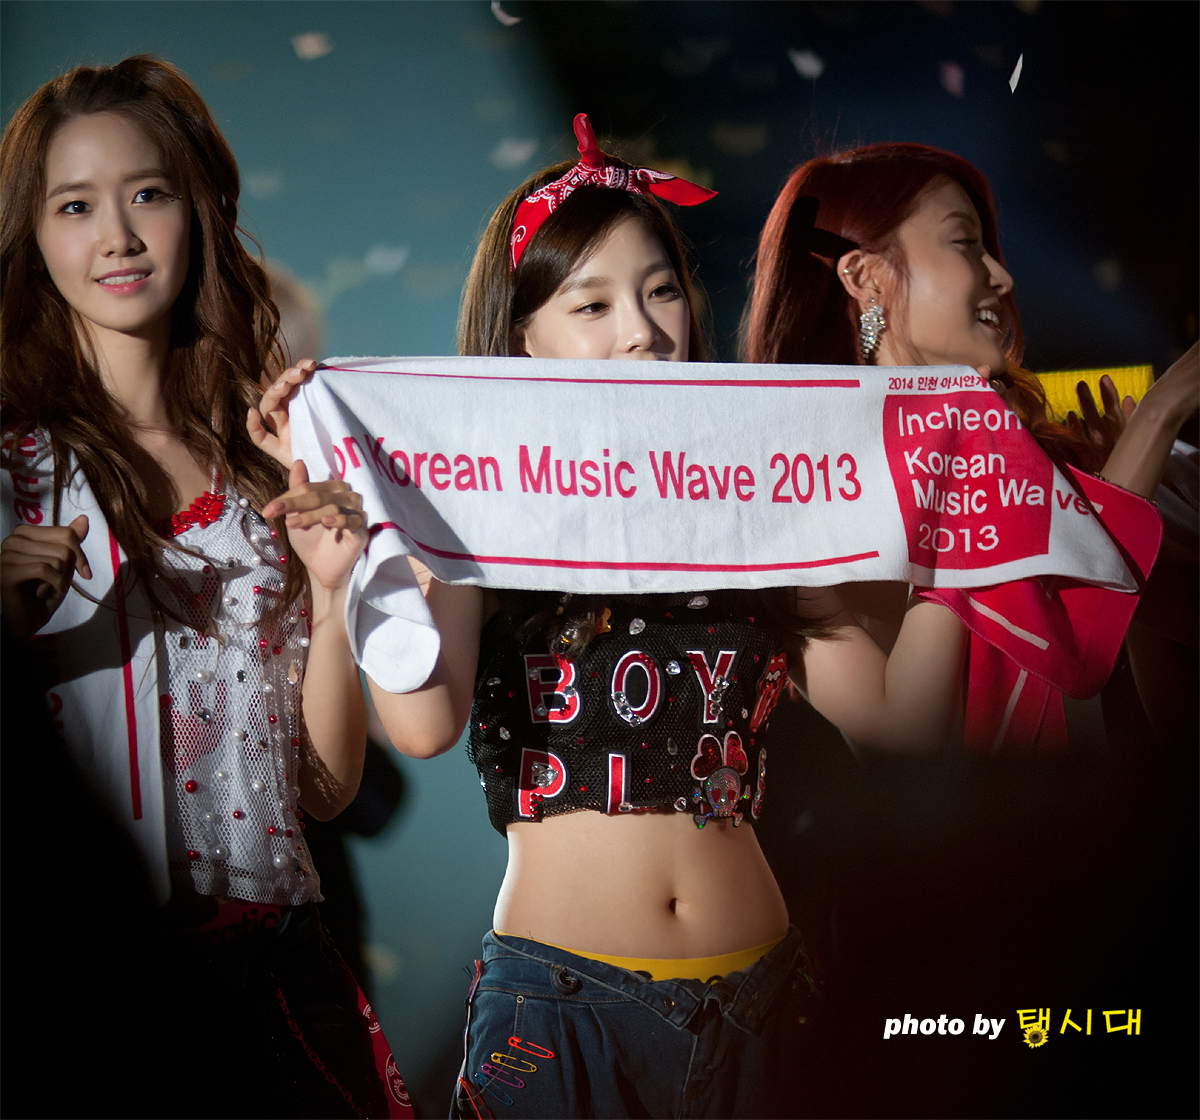 [PIC][01-09-2013]Hình ảnh mới nhất từ "Incheon Korean Music Wave 2013" của SNSD và MC YulTi vào tối nay - Page 4 2132873F5229D9EC21A66A